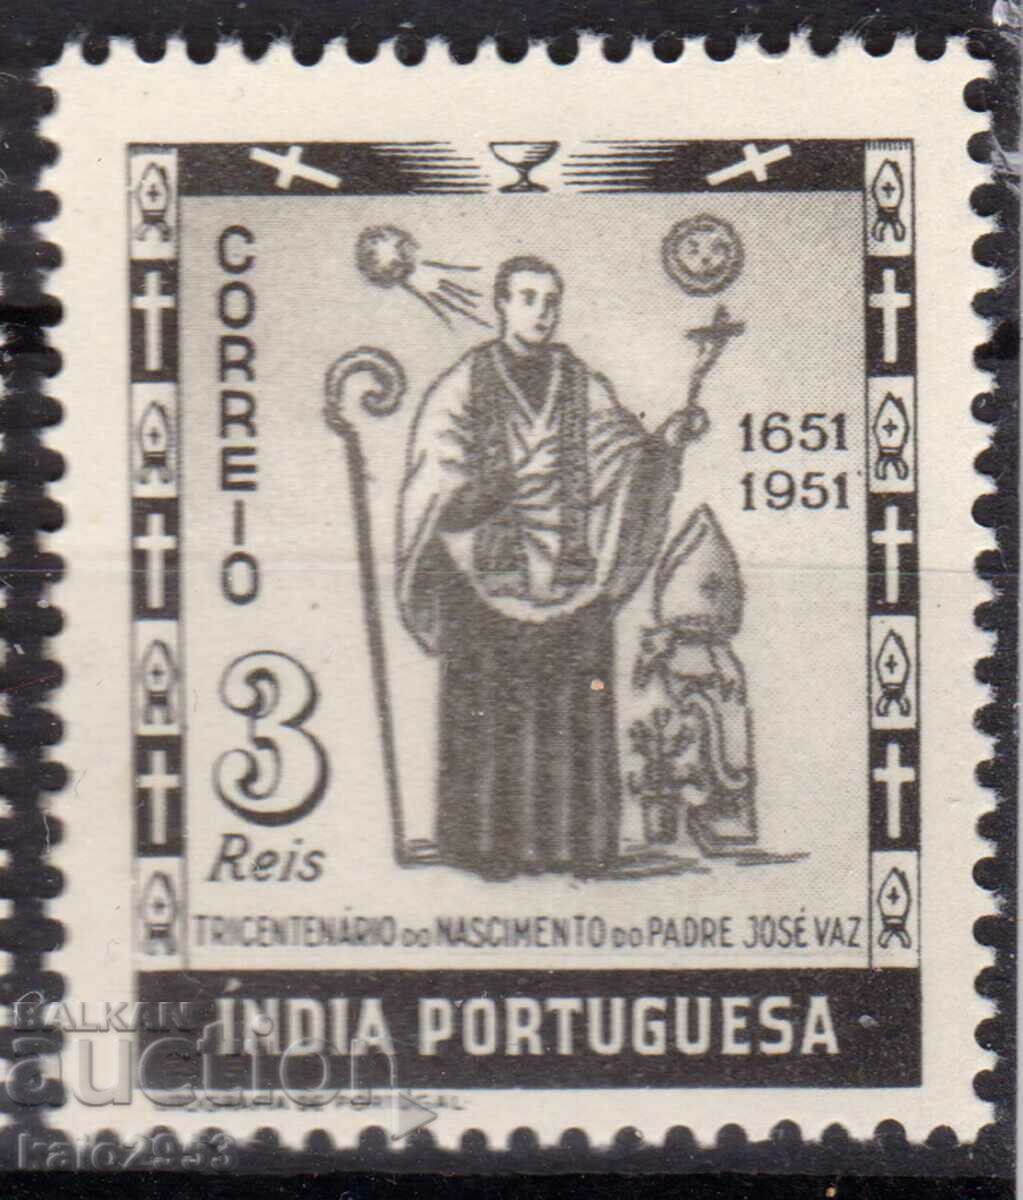 Португалска Индия-1951-300 г.от рожд. на монах Jose Vaz-MLH